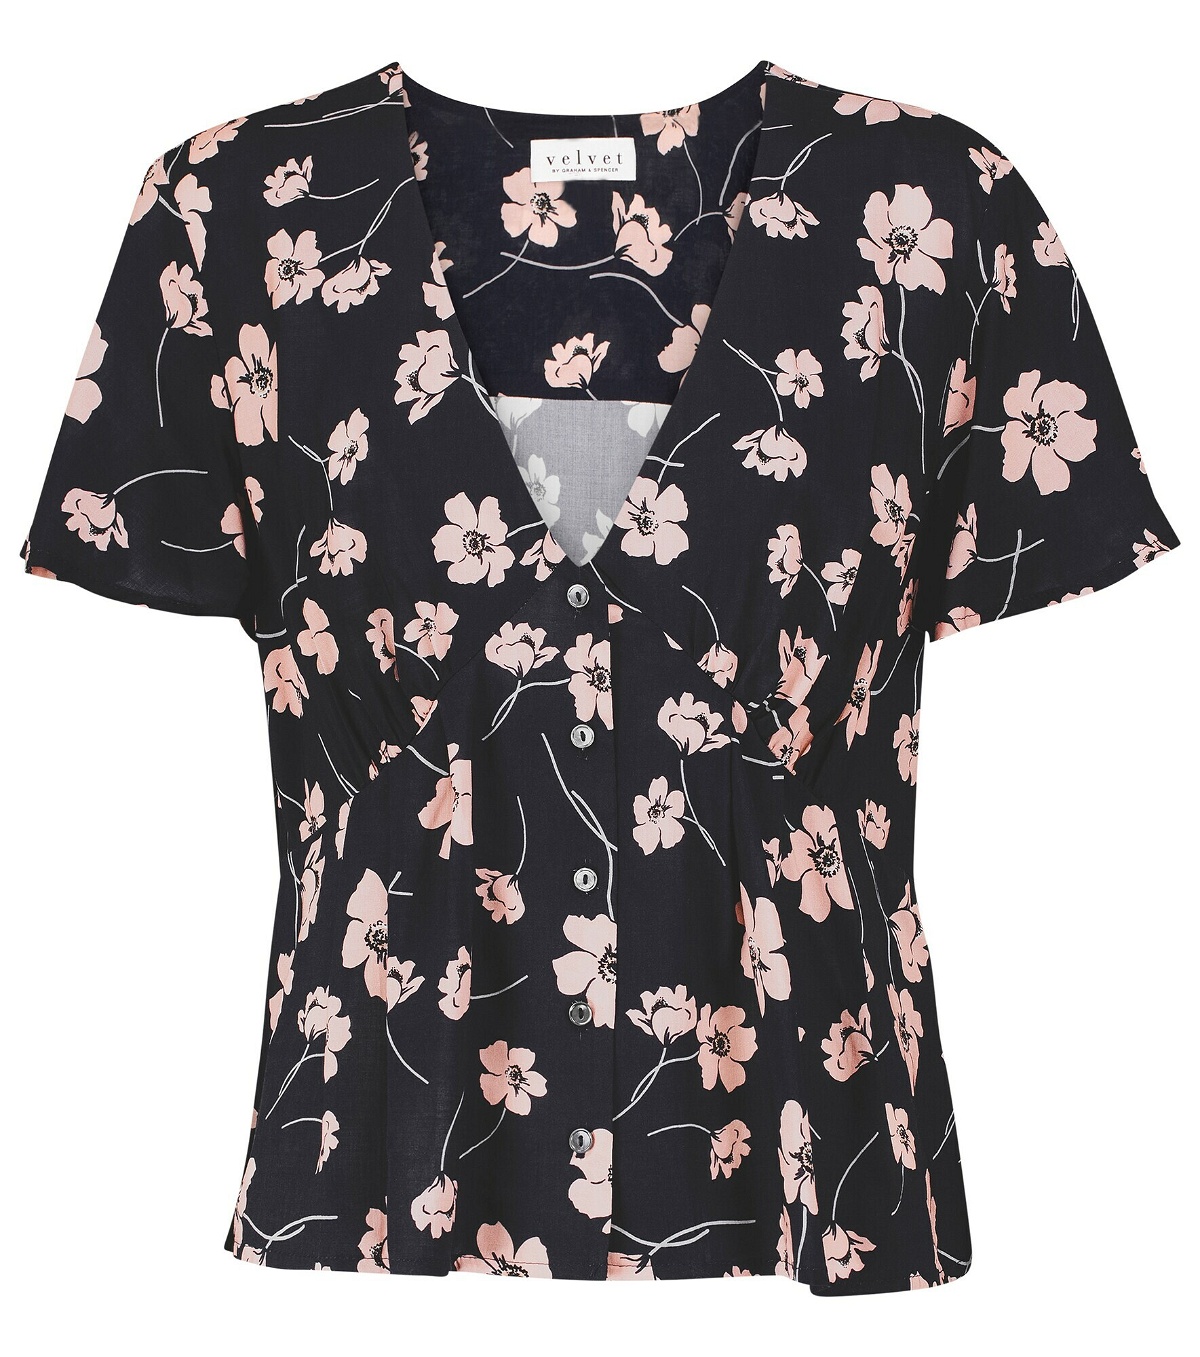 Velvet - Juliana floral blouse Velvet